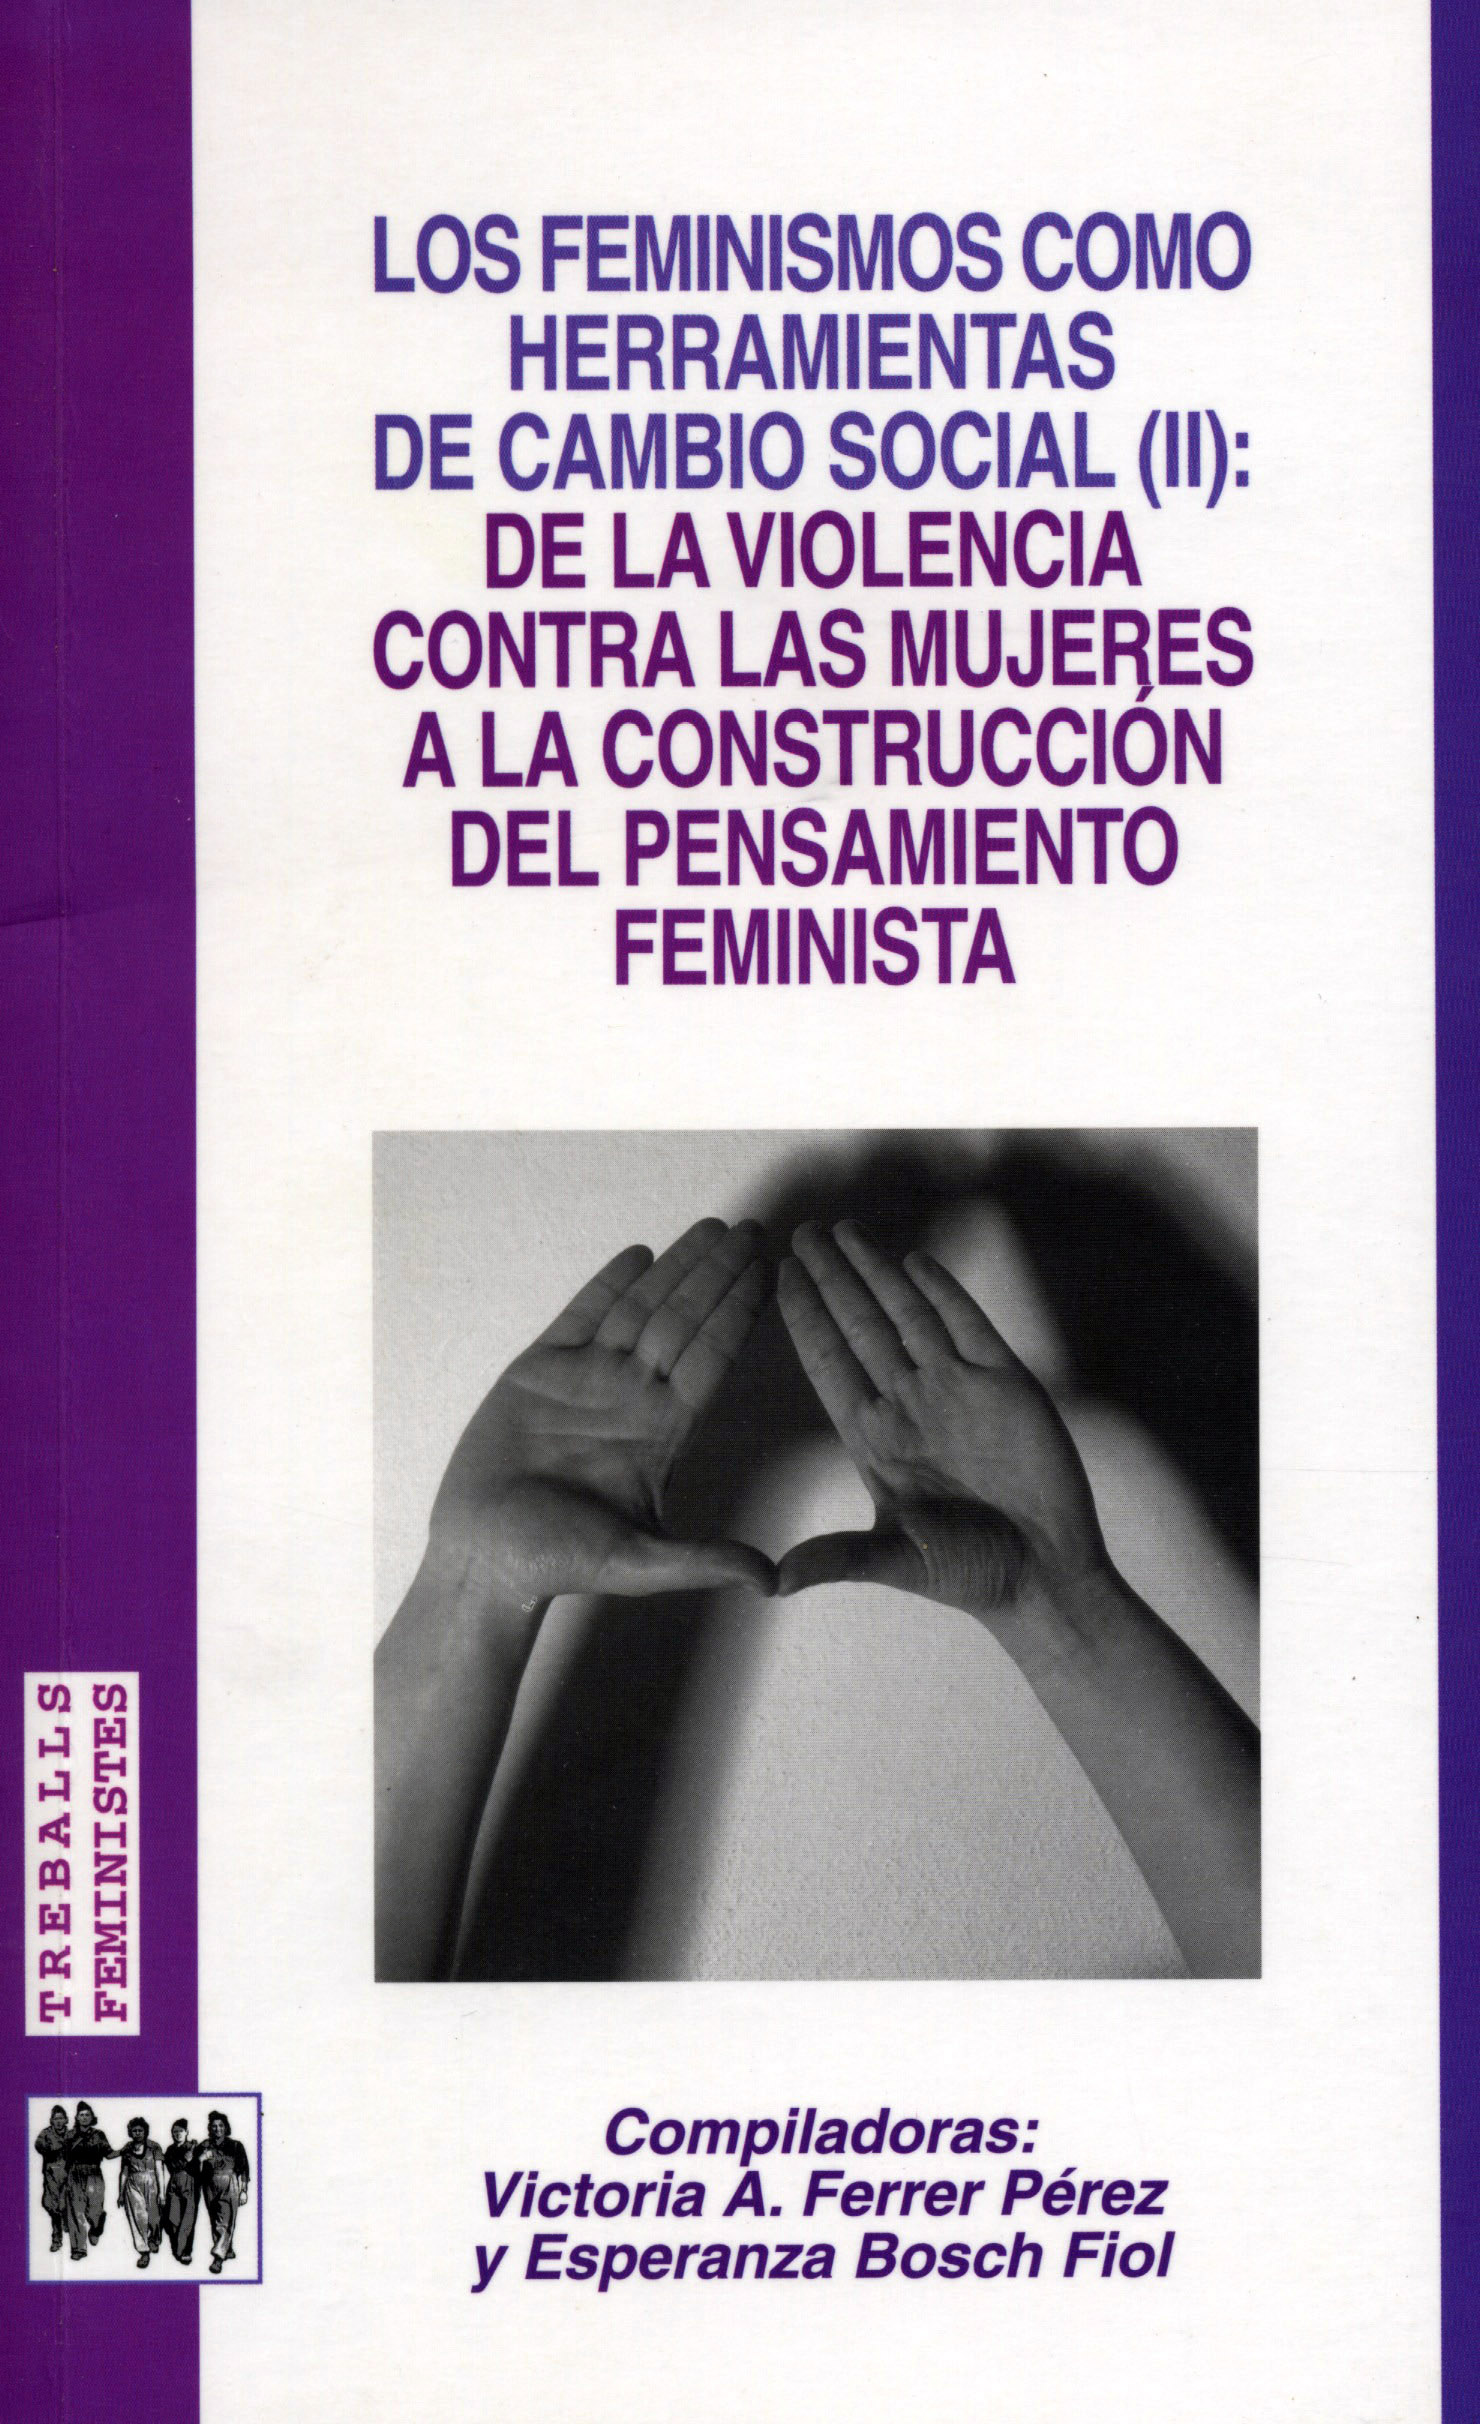 Los feminismos como herramientas de cambio social (II): de la violencia contra las mujeres a la construcciÃ³n del pensamiento feminista